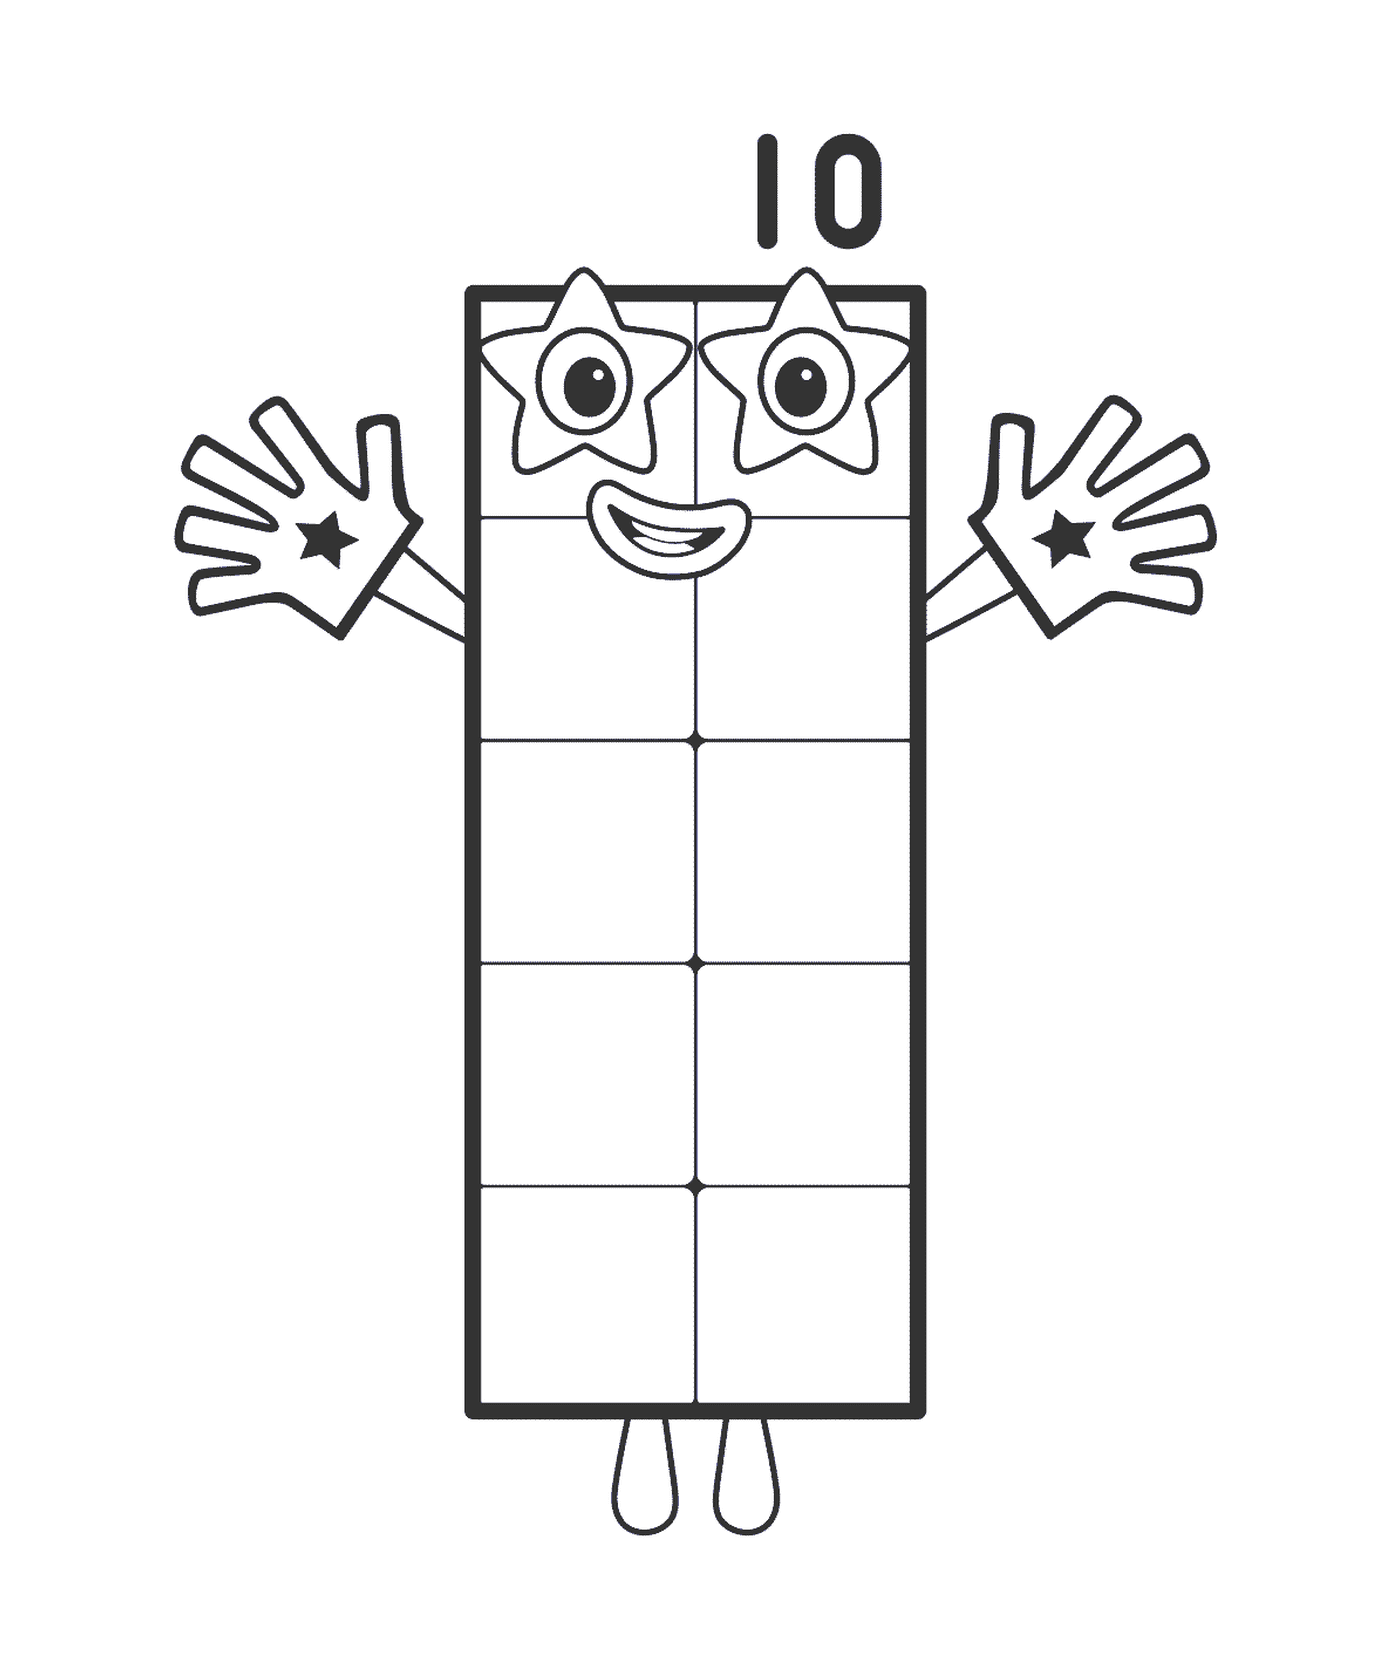  Rectangle Number 10, a rectangular shape 